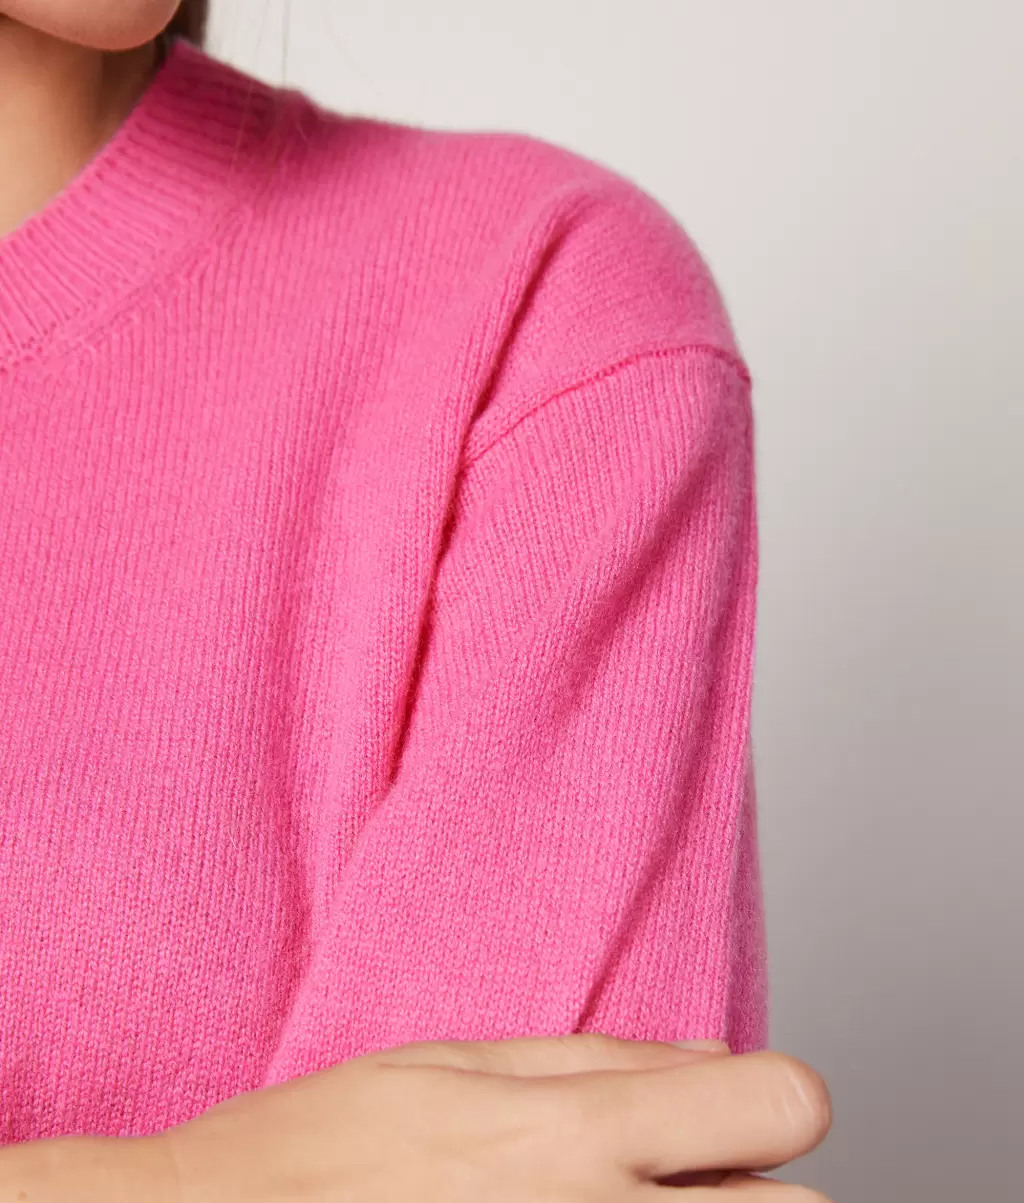 Pink Swetry Z Okrągłym Dekoltem Sweter Z Okrągłym Dekoltem Z Kaszmiru Ultrasoft Falconeri Kobieta - 3